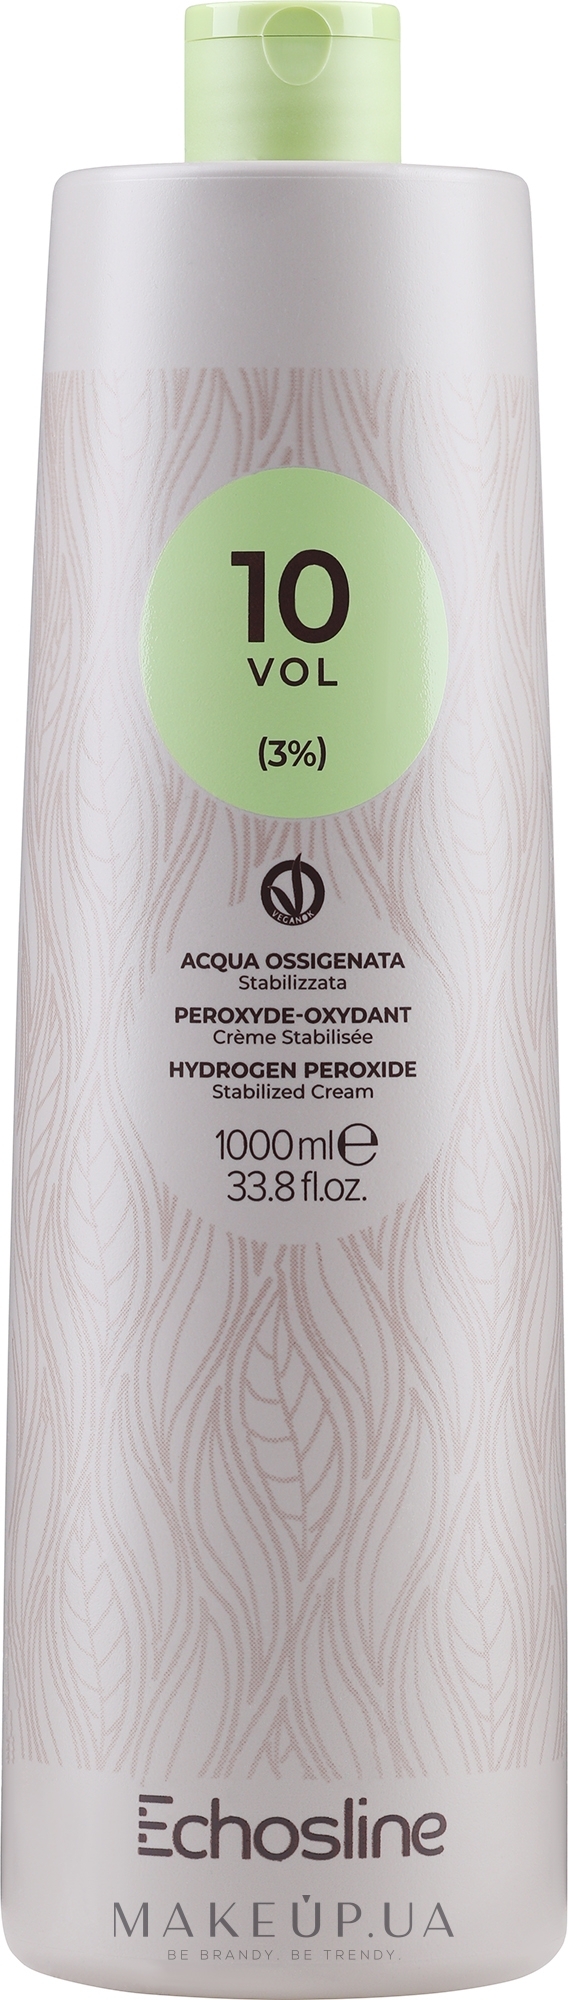 Крем-окислювач - Echosline Hydrogen Peroxide Stabilized Cream 10 vol (3%) — фото 1000ml